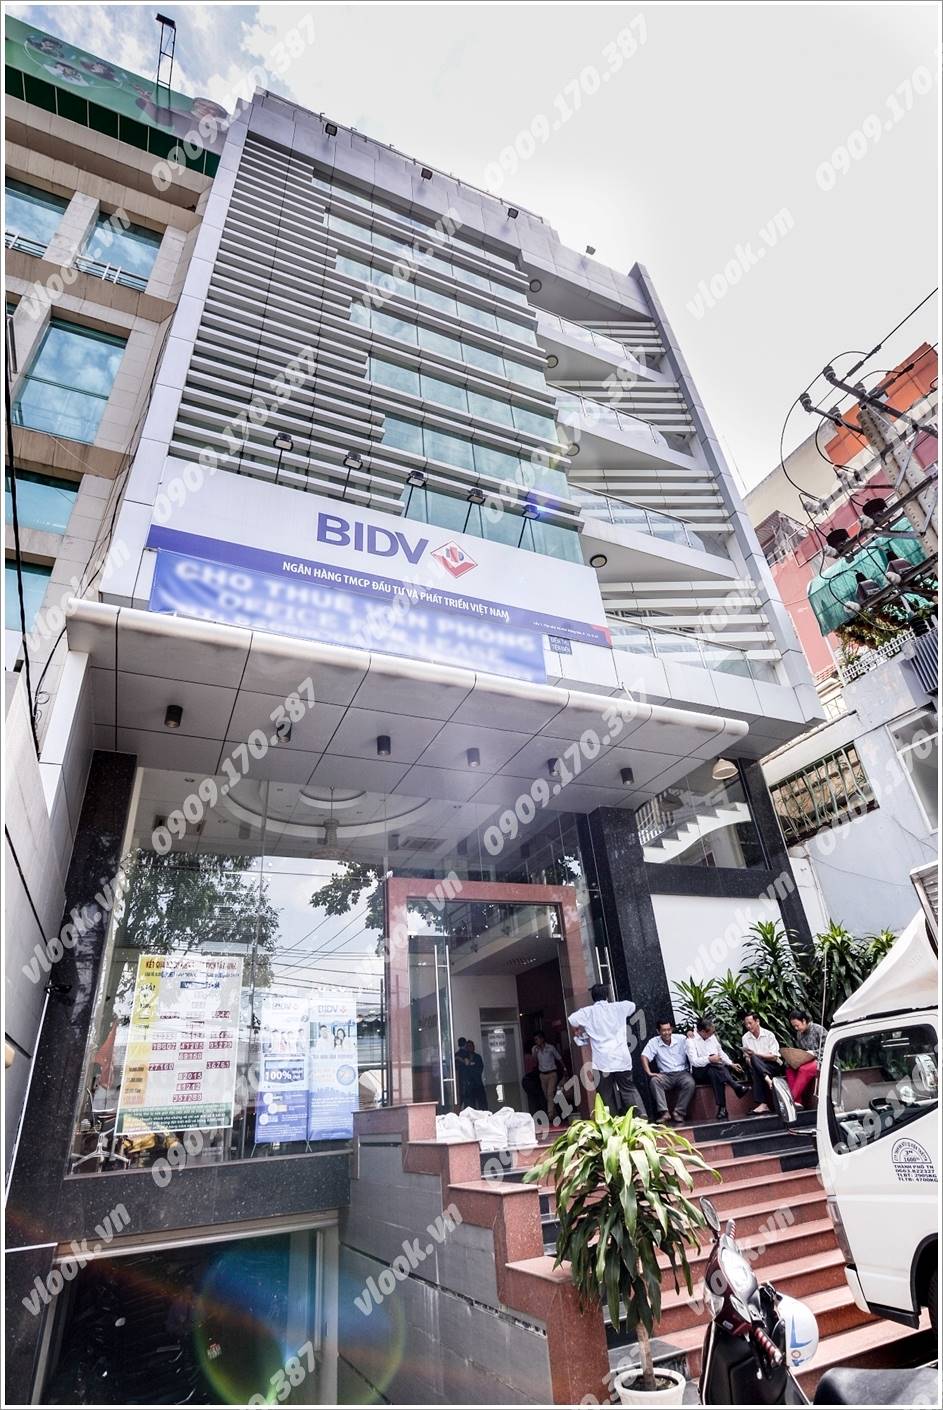 Cao ốc cho thuê văn phòng Building 42, Đồng Nai, TPHCM - vlook.vn